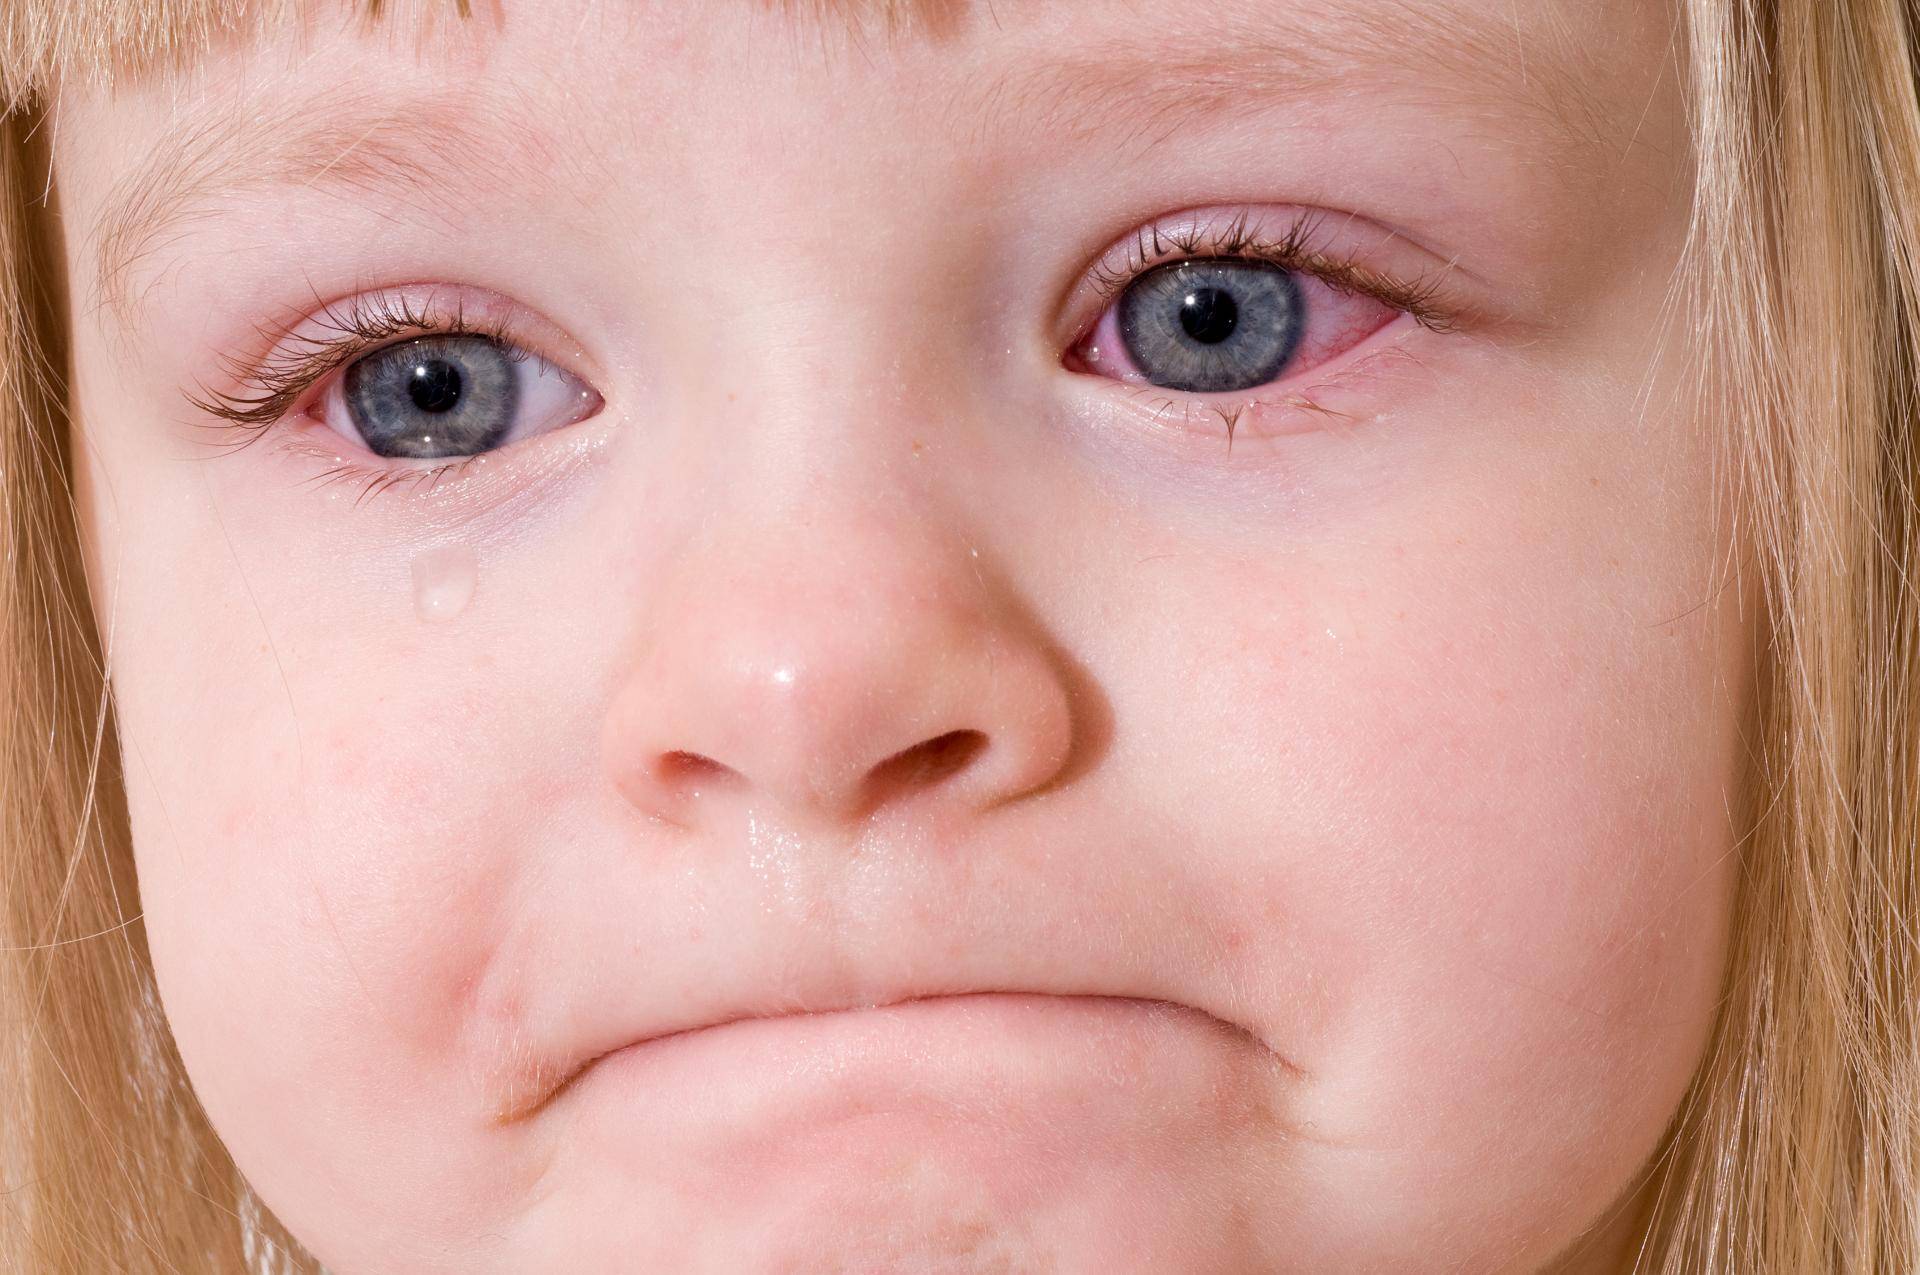 Аллергический конъюнктивит у ребёнка: симптомы, фото, лечение в домашних условиях